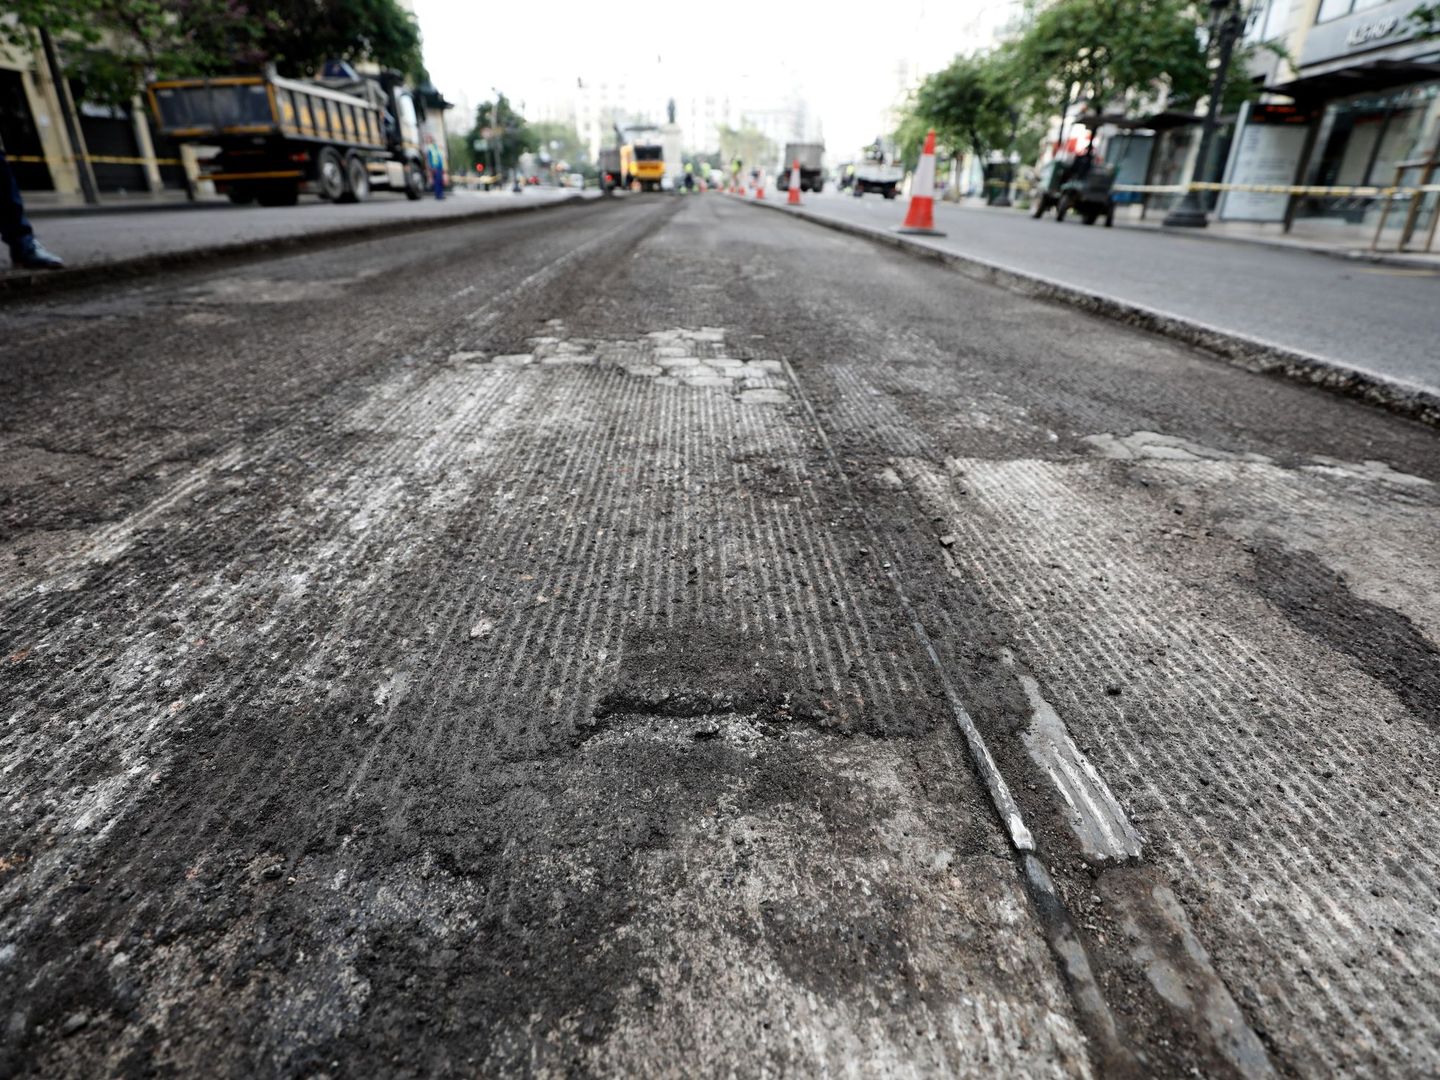 La investigación podría ayudar a encontrar compuestos menos tóxicos para el asfalto (EFE/Juan Carlos Cárdenas)